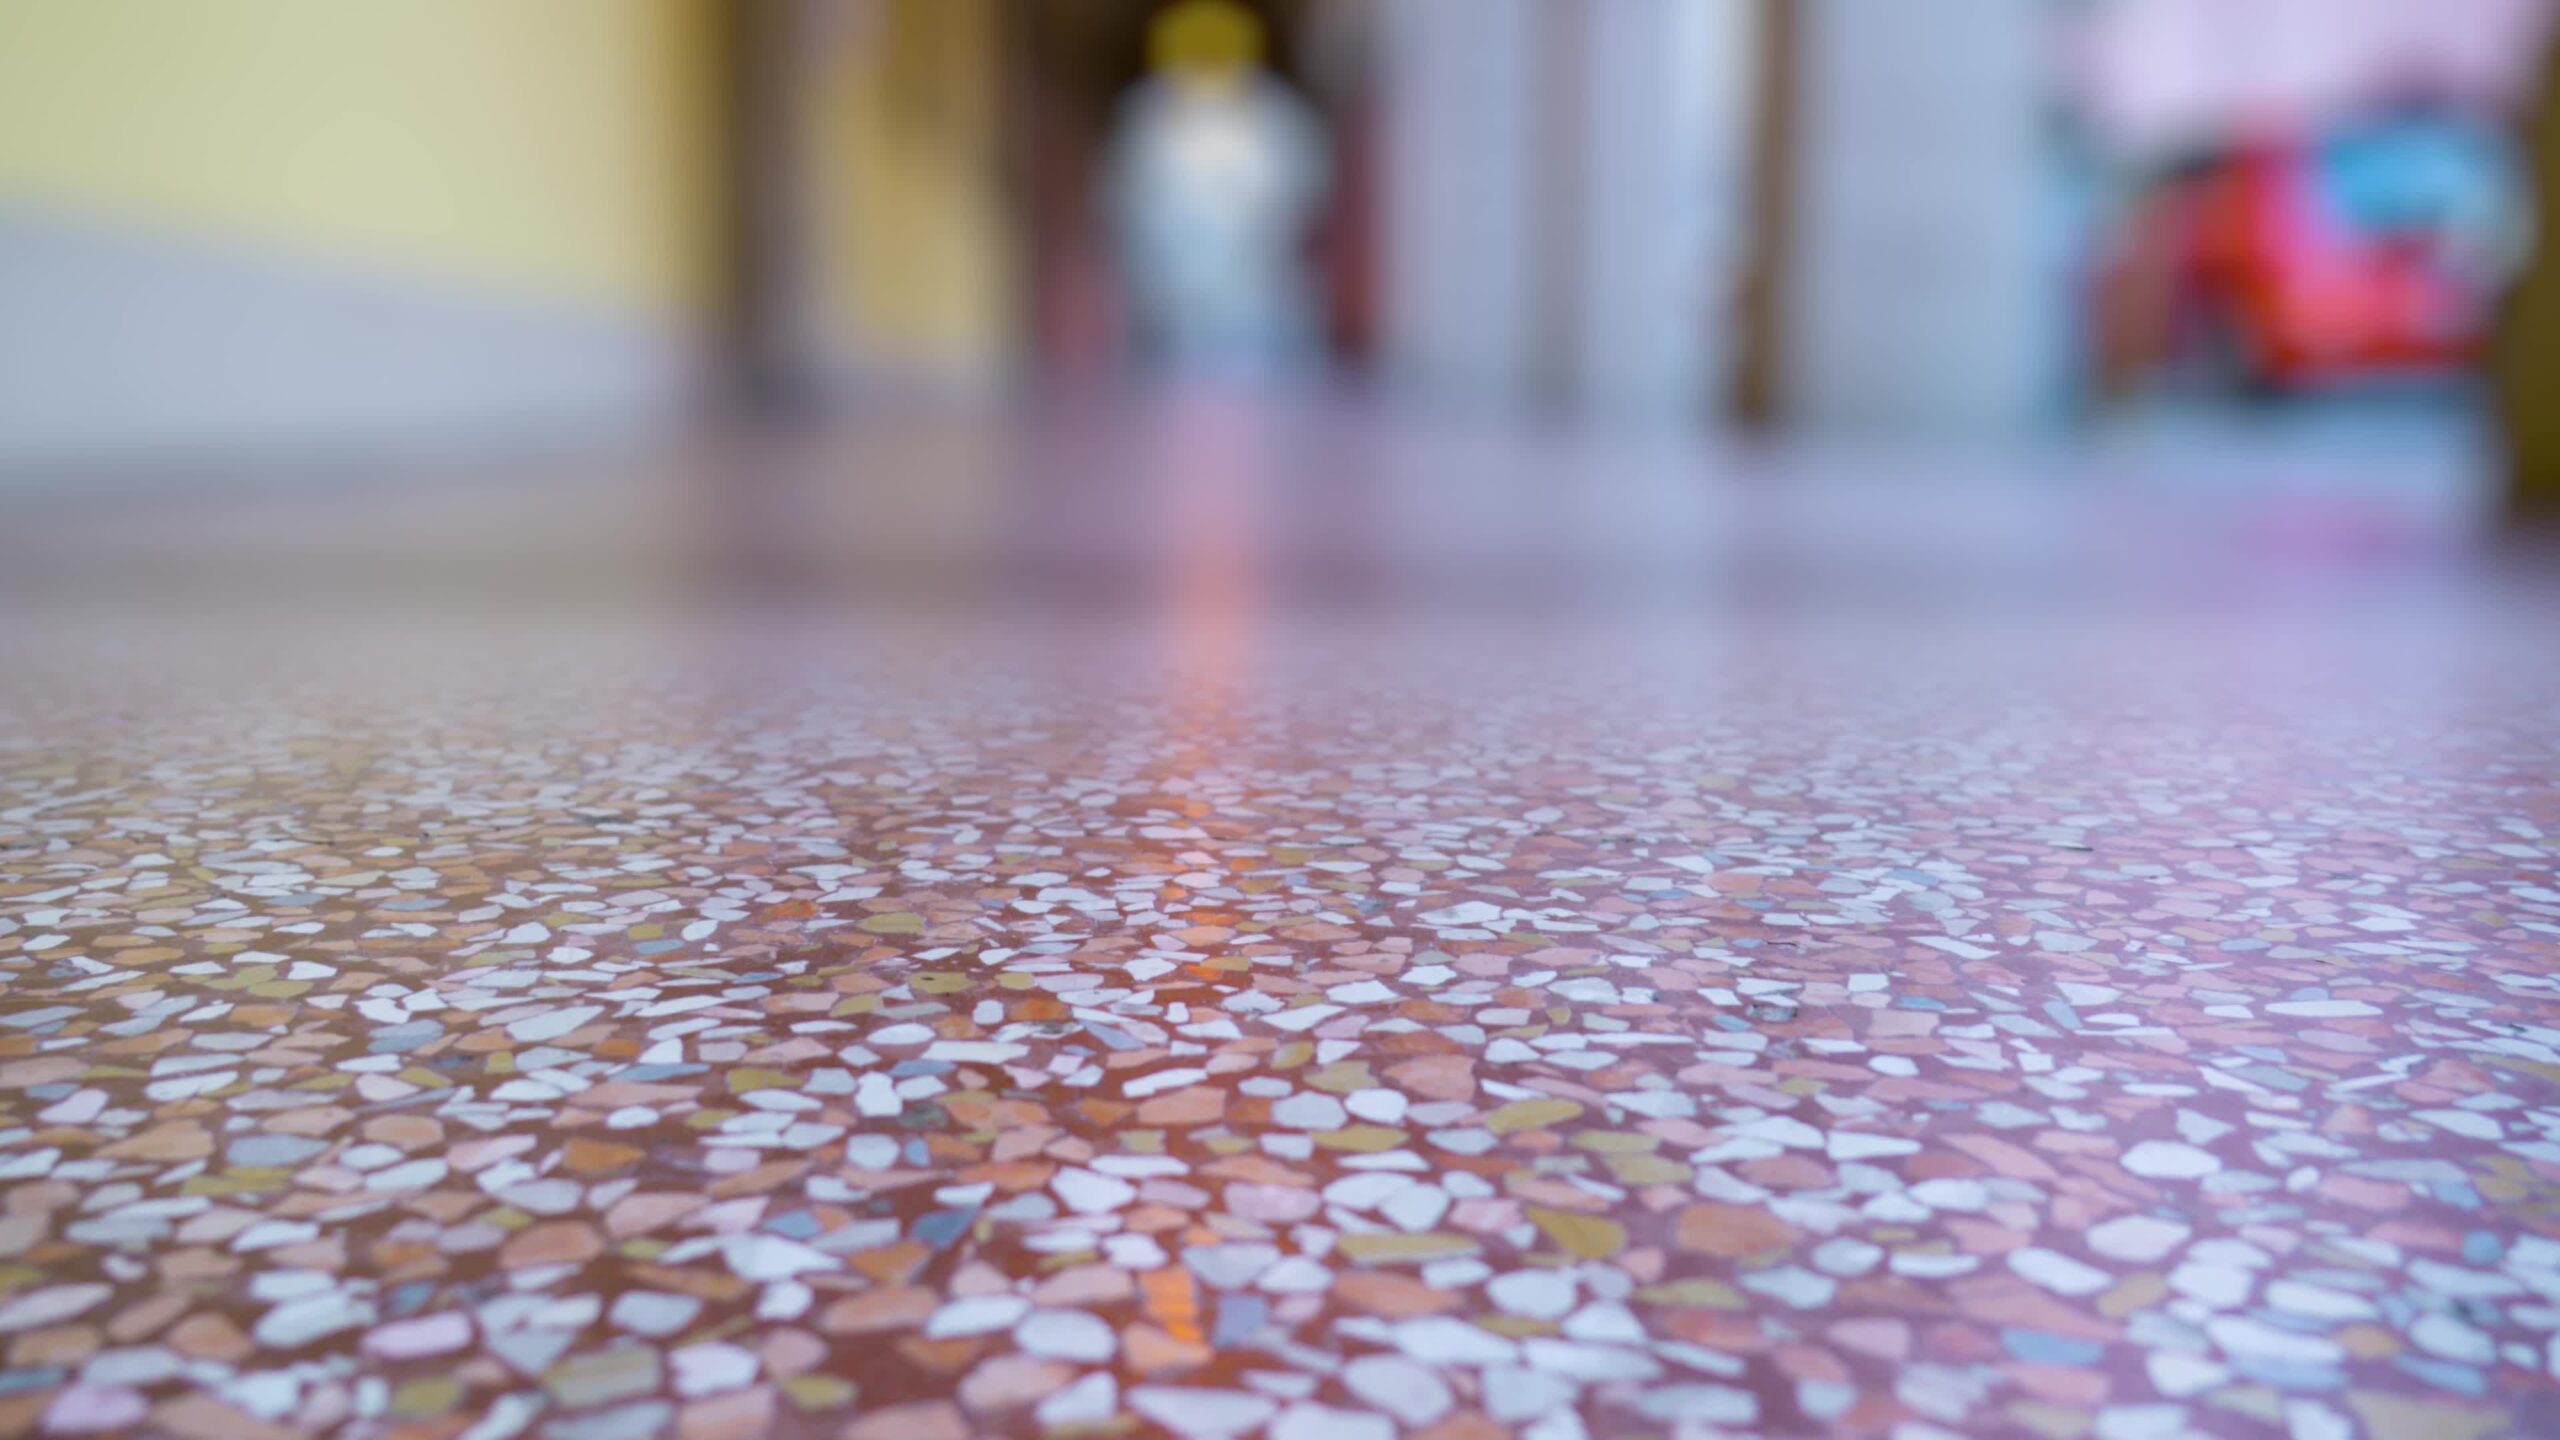 Il pavimento in marmo con briciole colorate riflette l’ombra scura